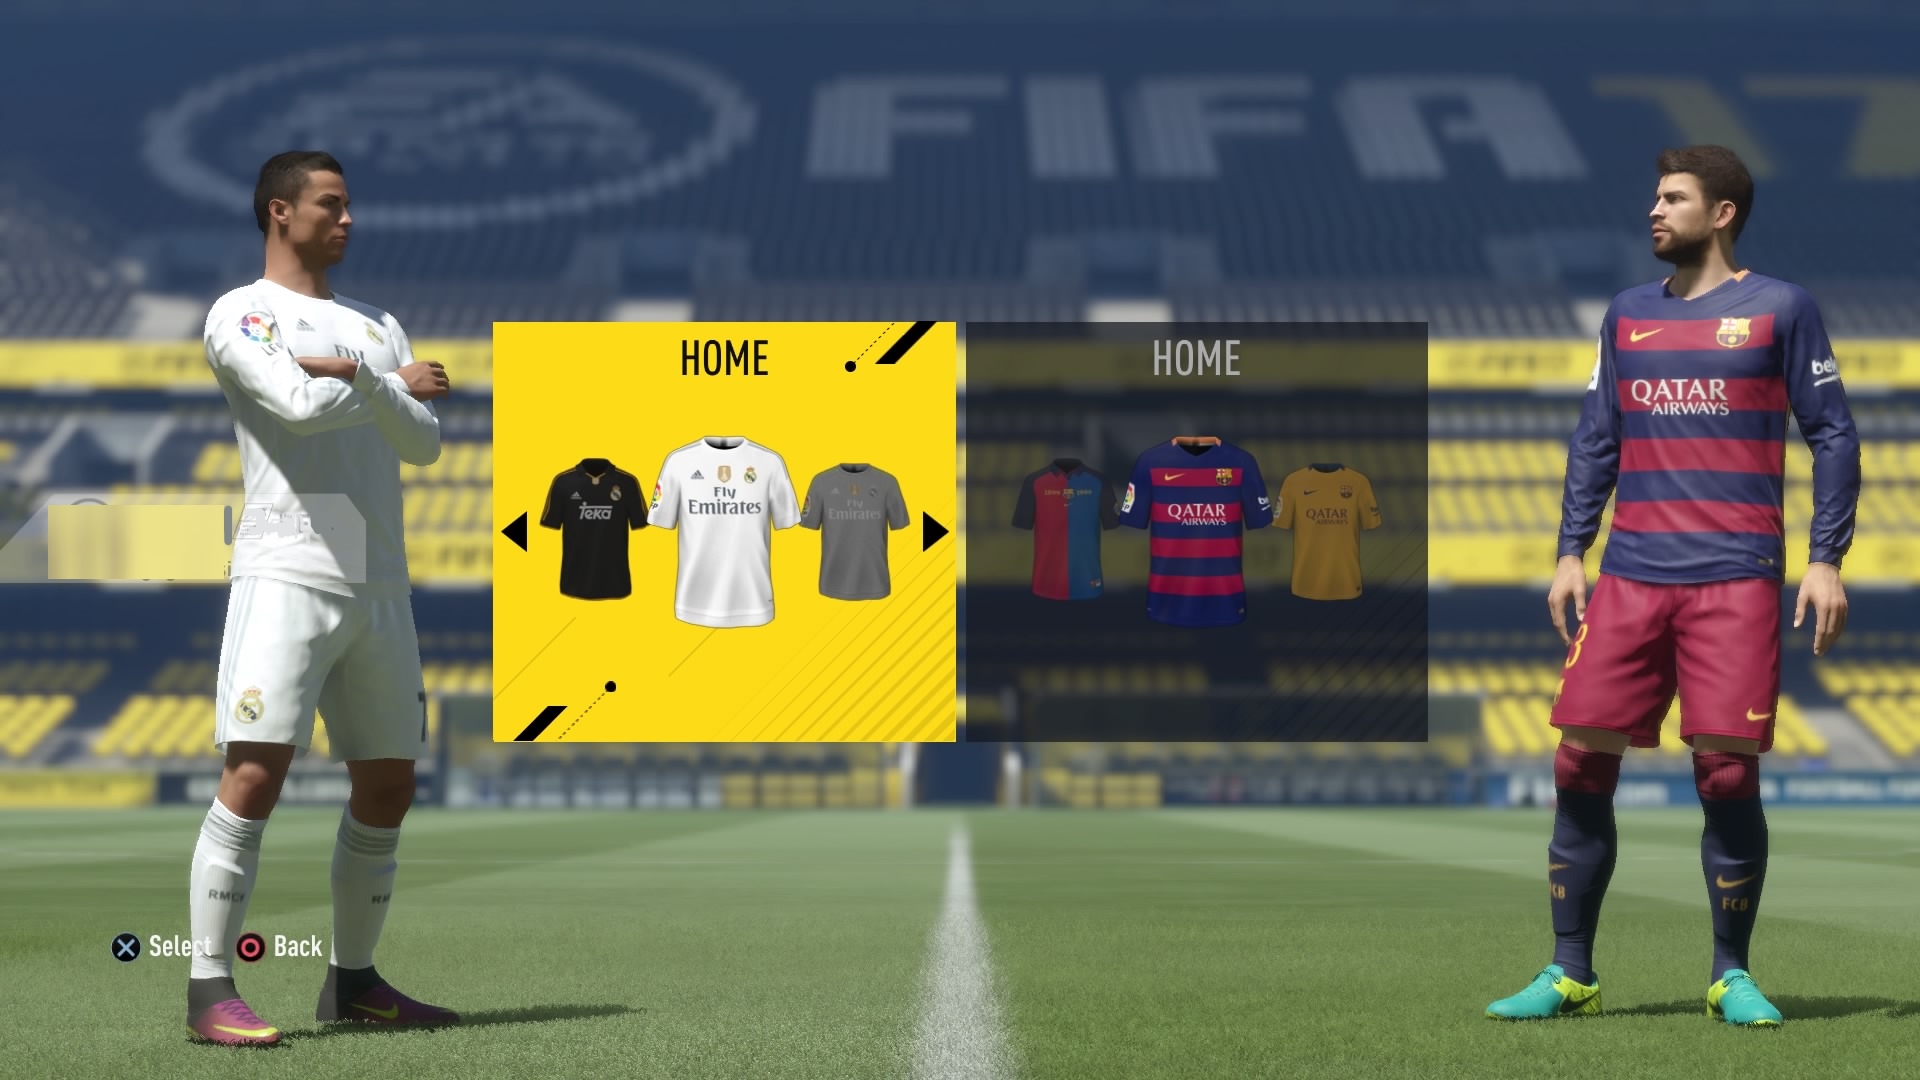 FIFA 23: veja principais mudanças na gameplay e primeiras impressões